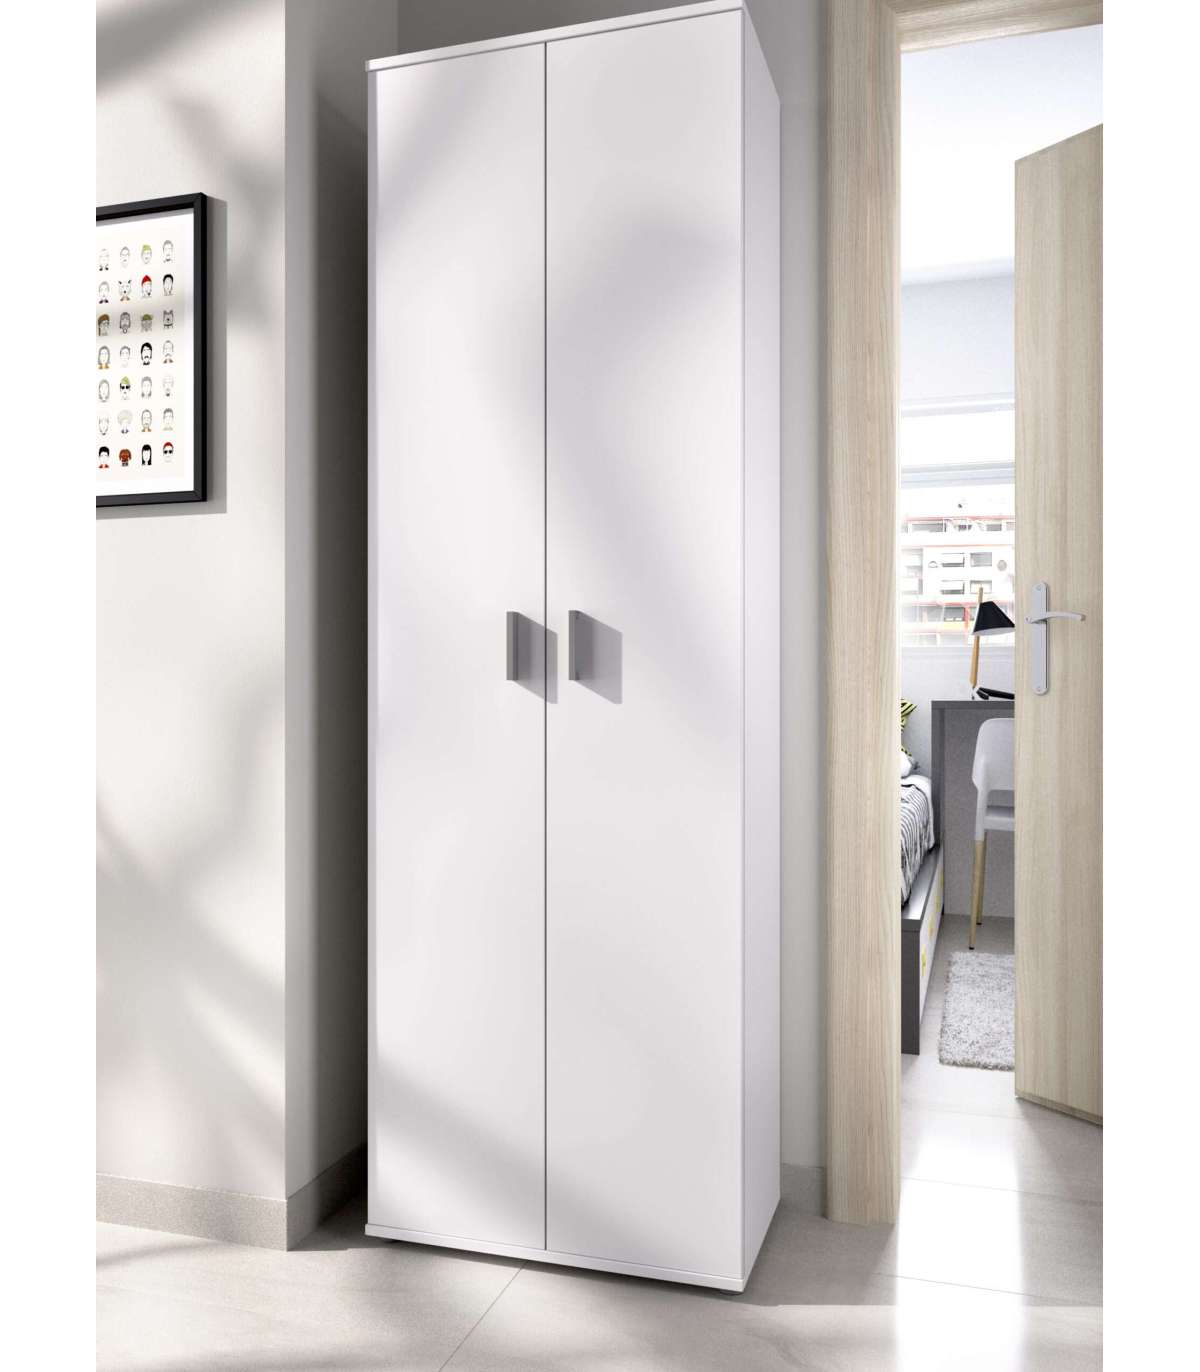 Armario almacenaje de cocina 2 puertas AVA. Armario multiusos en blanco con  3 estantes. 180x60x34,4 cm